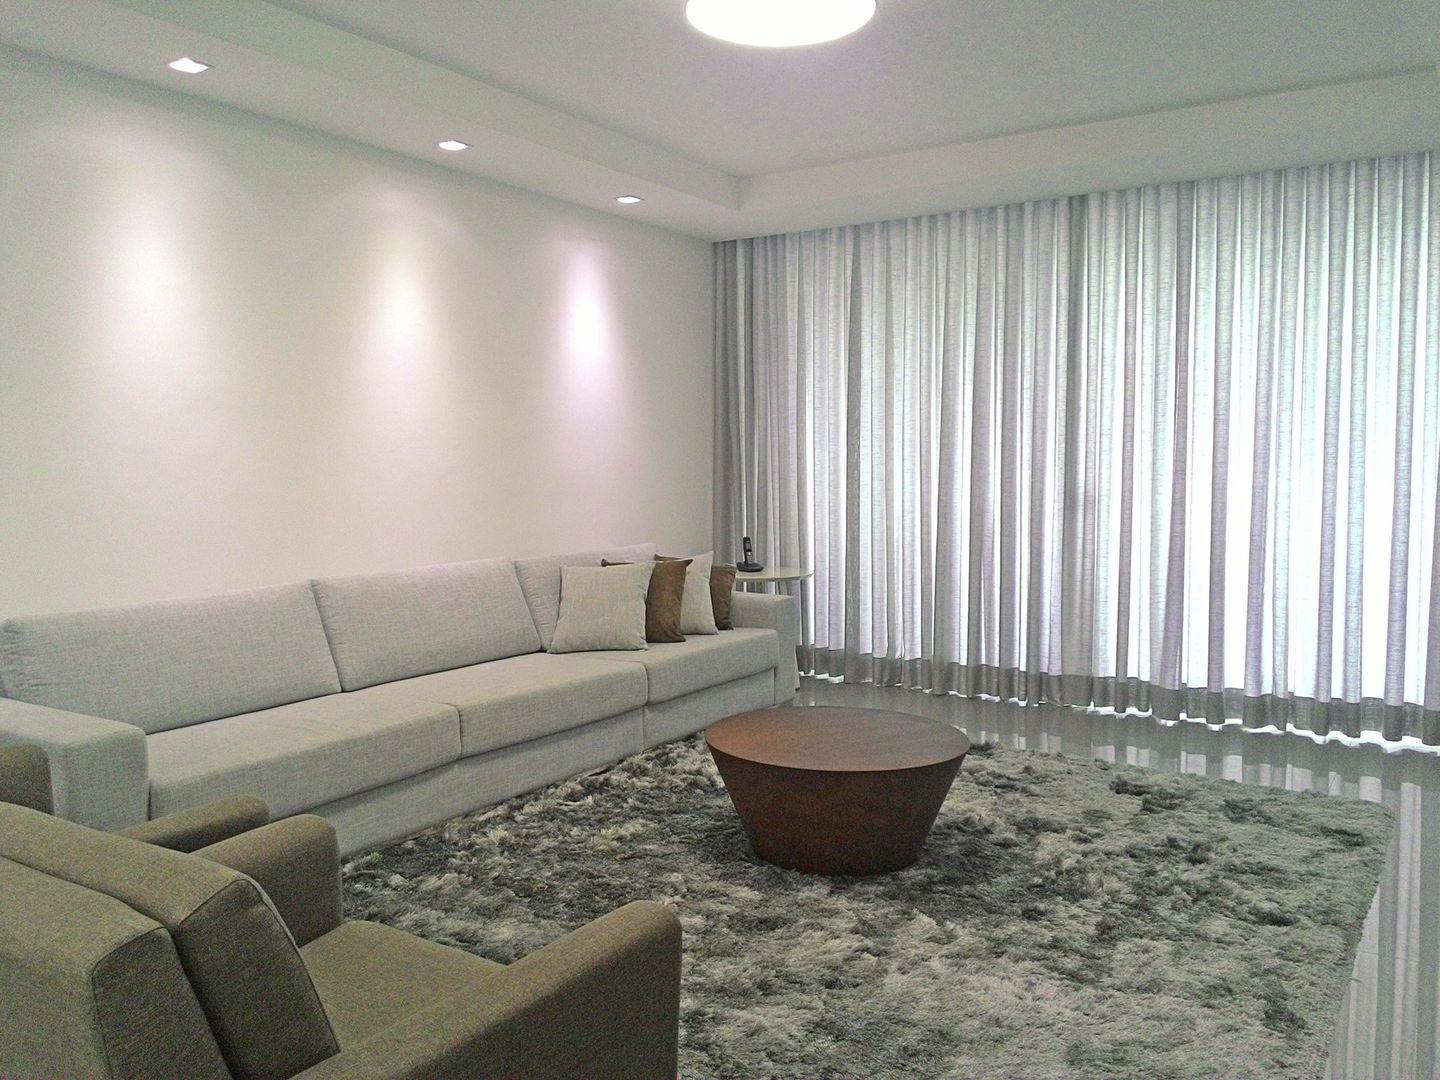 Apartamento em Divinópolis - MG, Filipe Castro Arquitetura | Design Filipe Castro Arquitetura | Design Living room